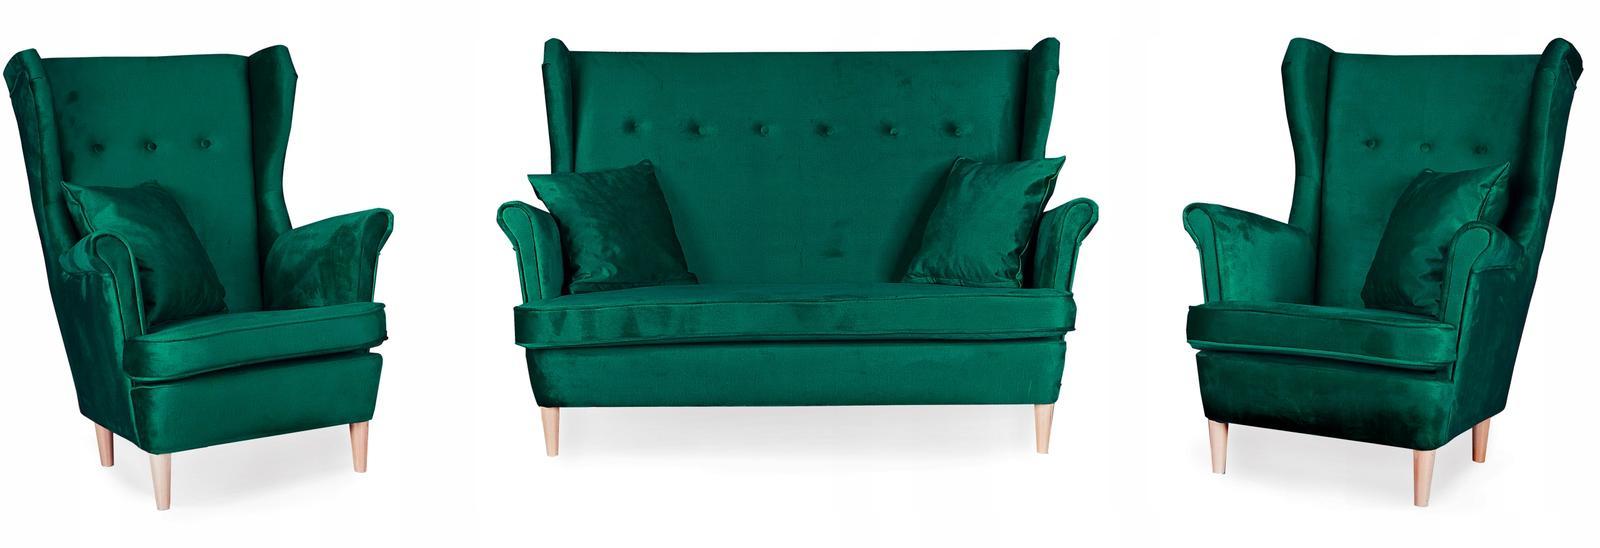 Zestaw wypoczynkowy sofa + 2 fotele Family Meble nr. 1